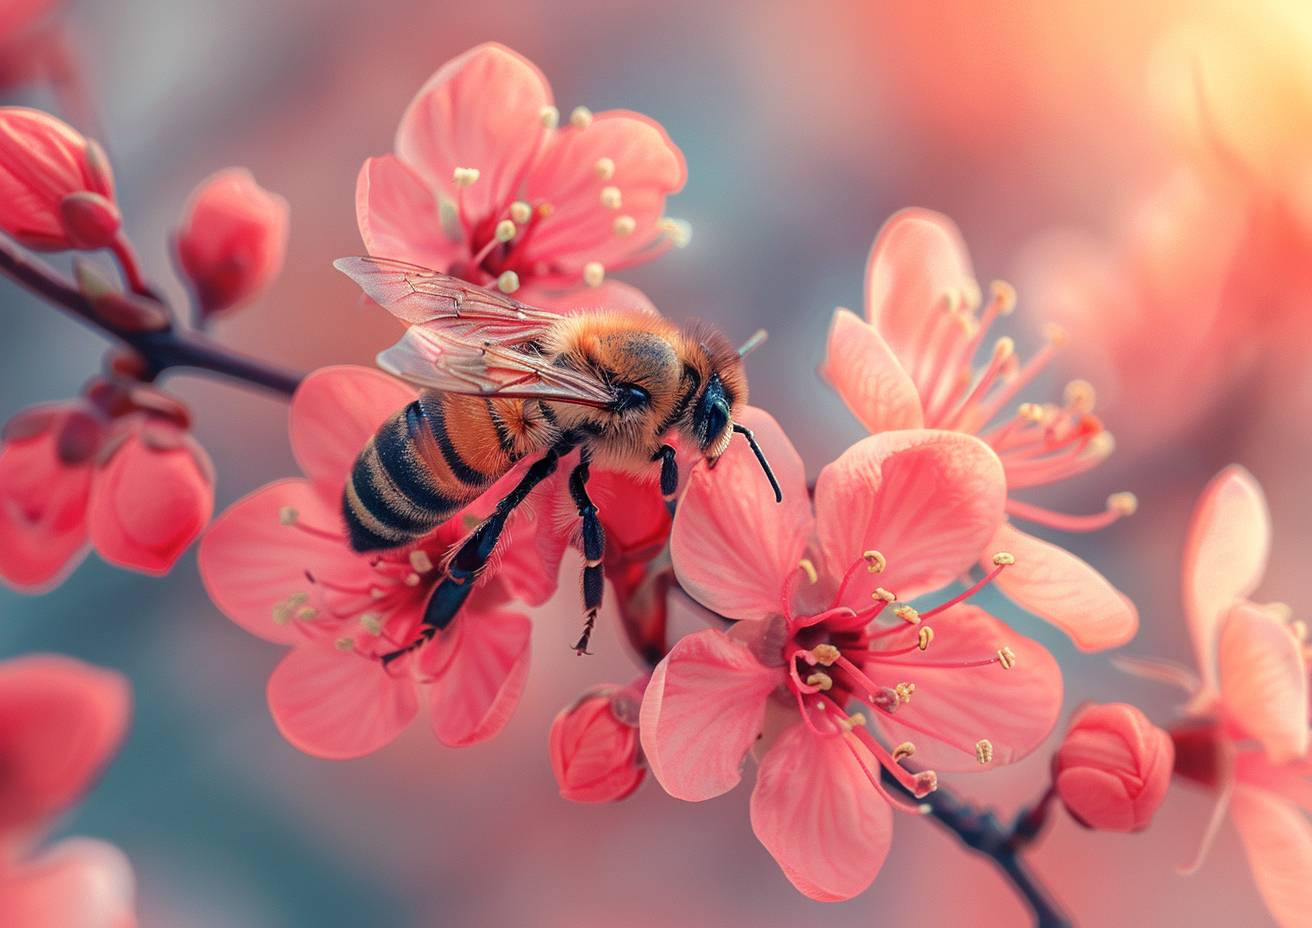 マクロ撮影はハチ、明るいピンク色の花、ミニマリズム、高解像度、強い視覚フロー